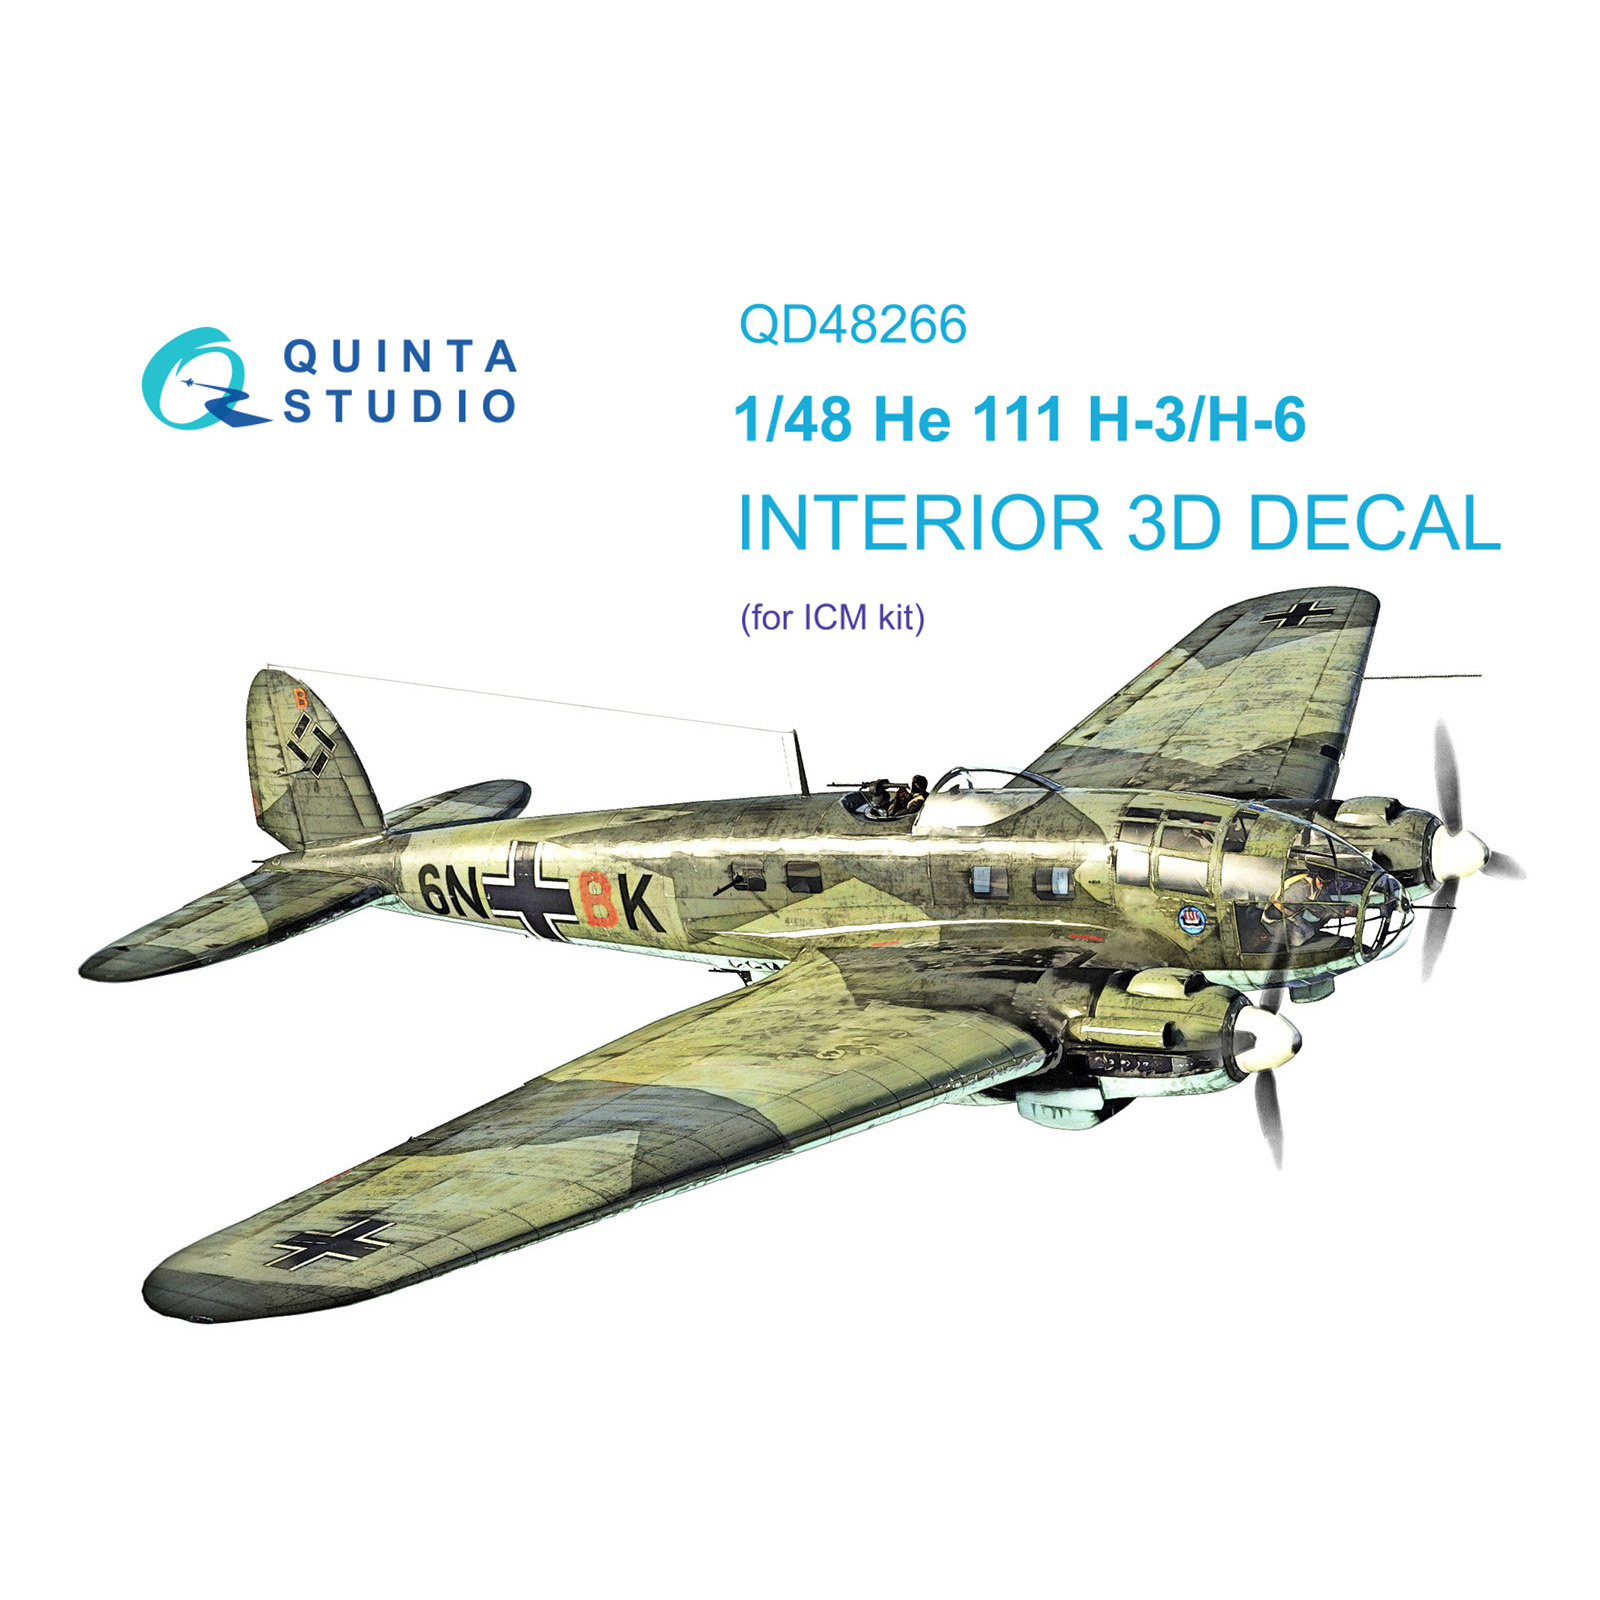 QD48266 Quinta Studio 1/48 3D Декаль интерьера кабины He 111H-3/H-6 (ICM)